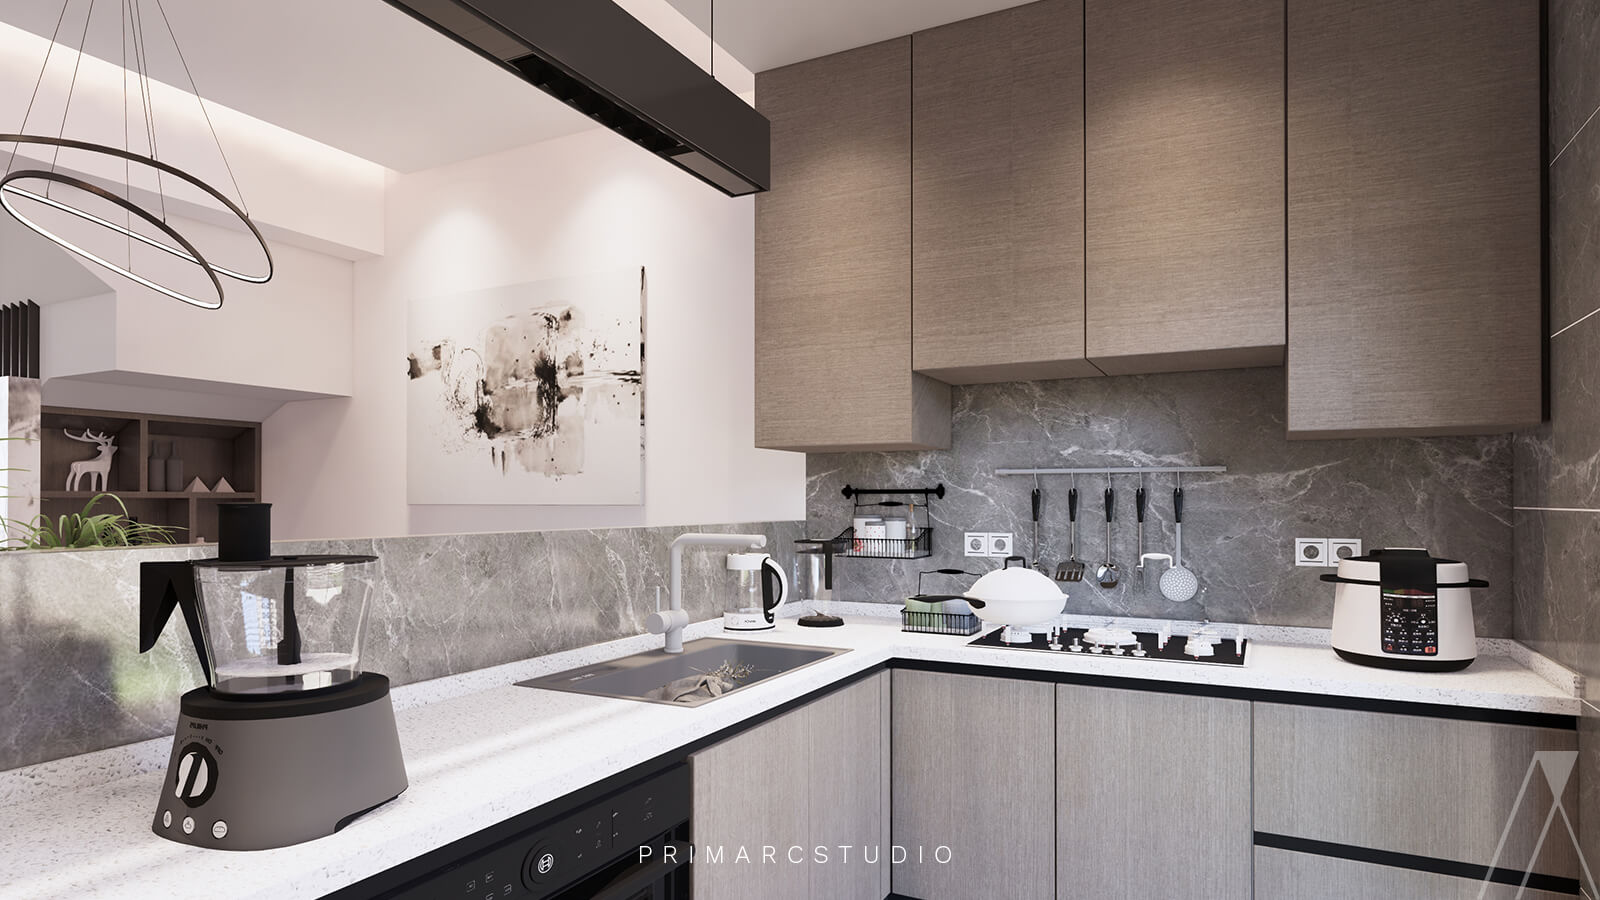 Kitchen modern interior design with cabinets